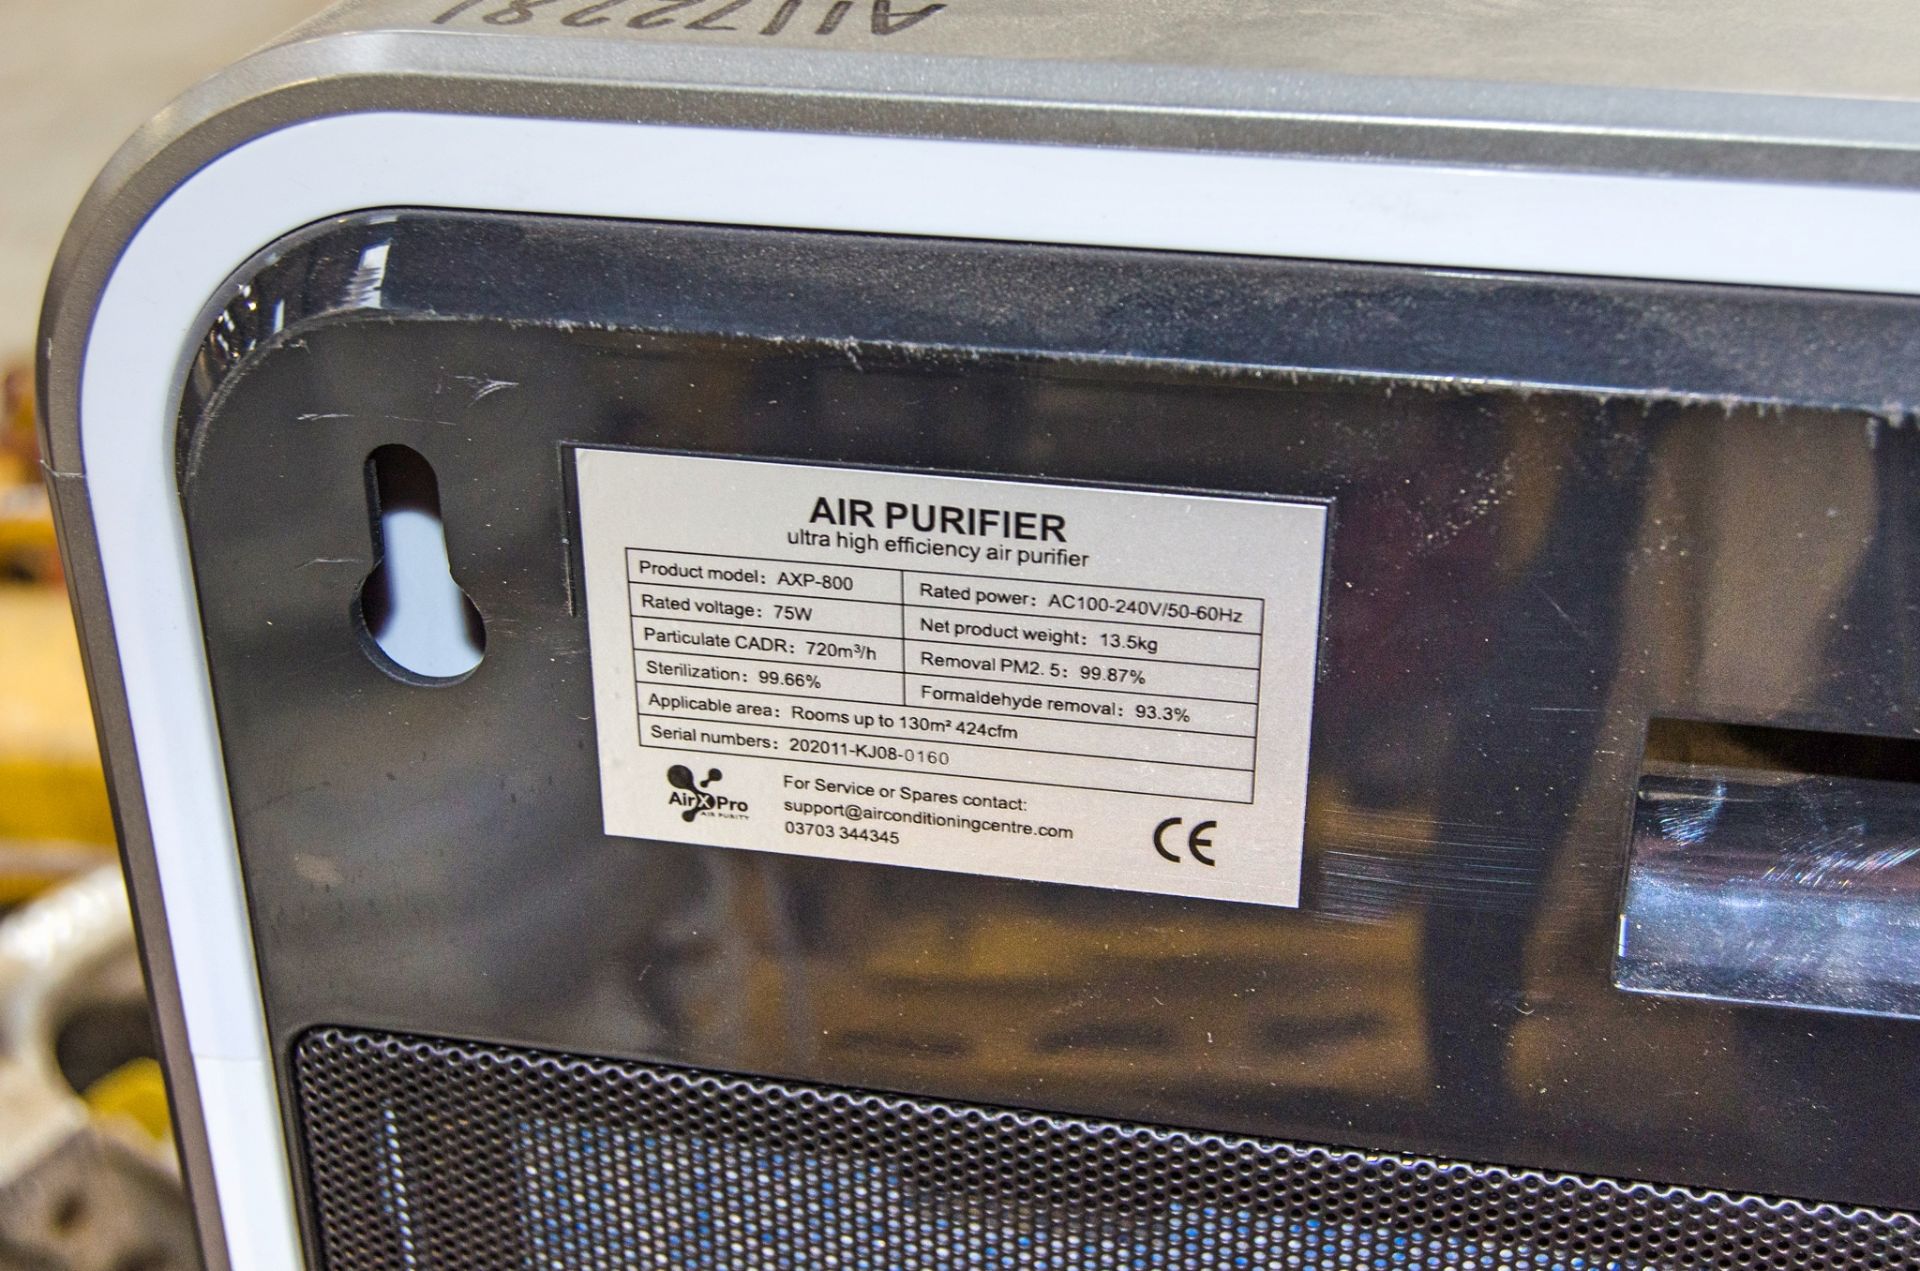 Air X Pro AXP800 240v air purifier A1172281 - Image 2 of 2